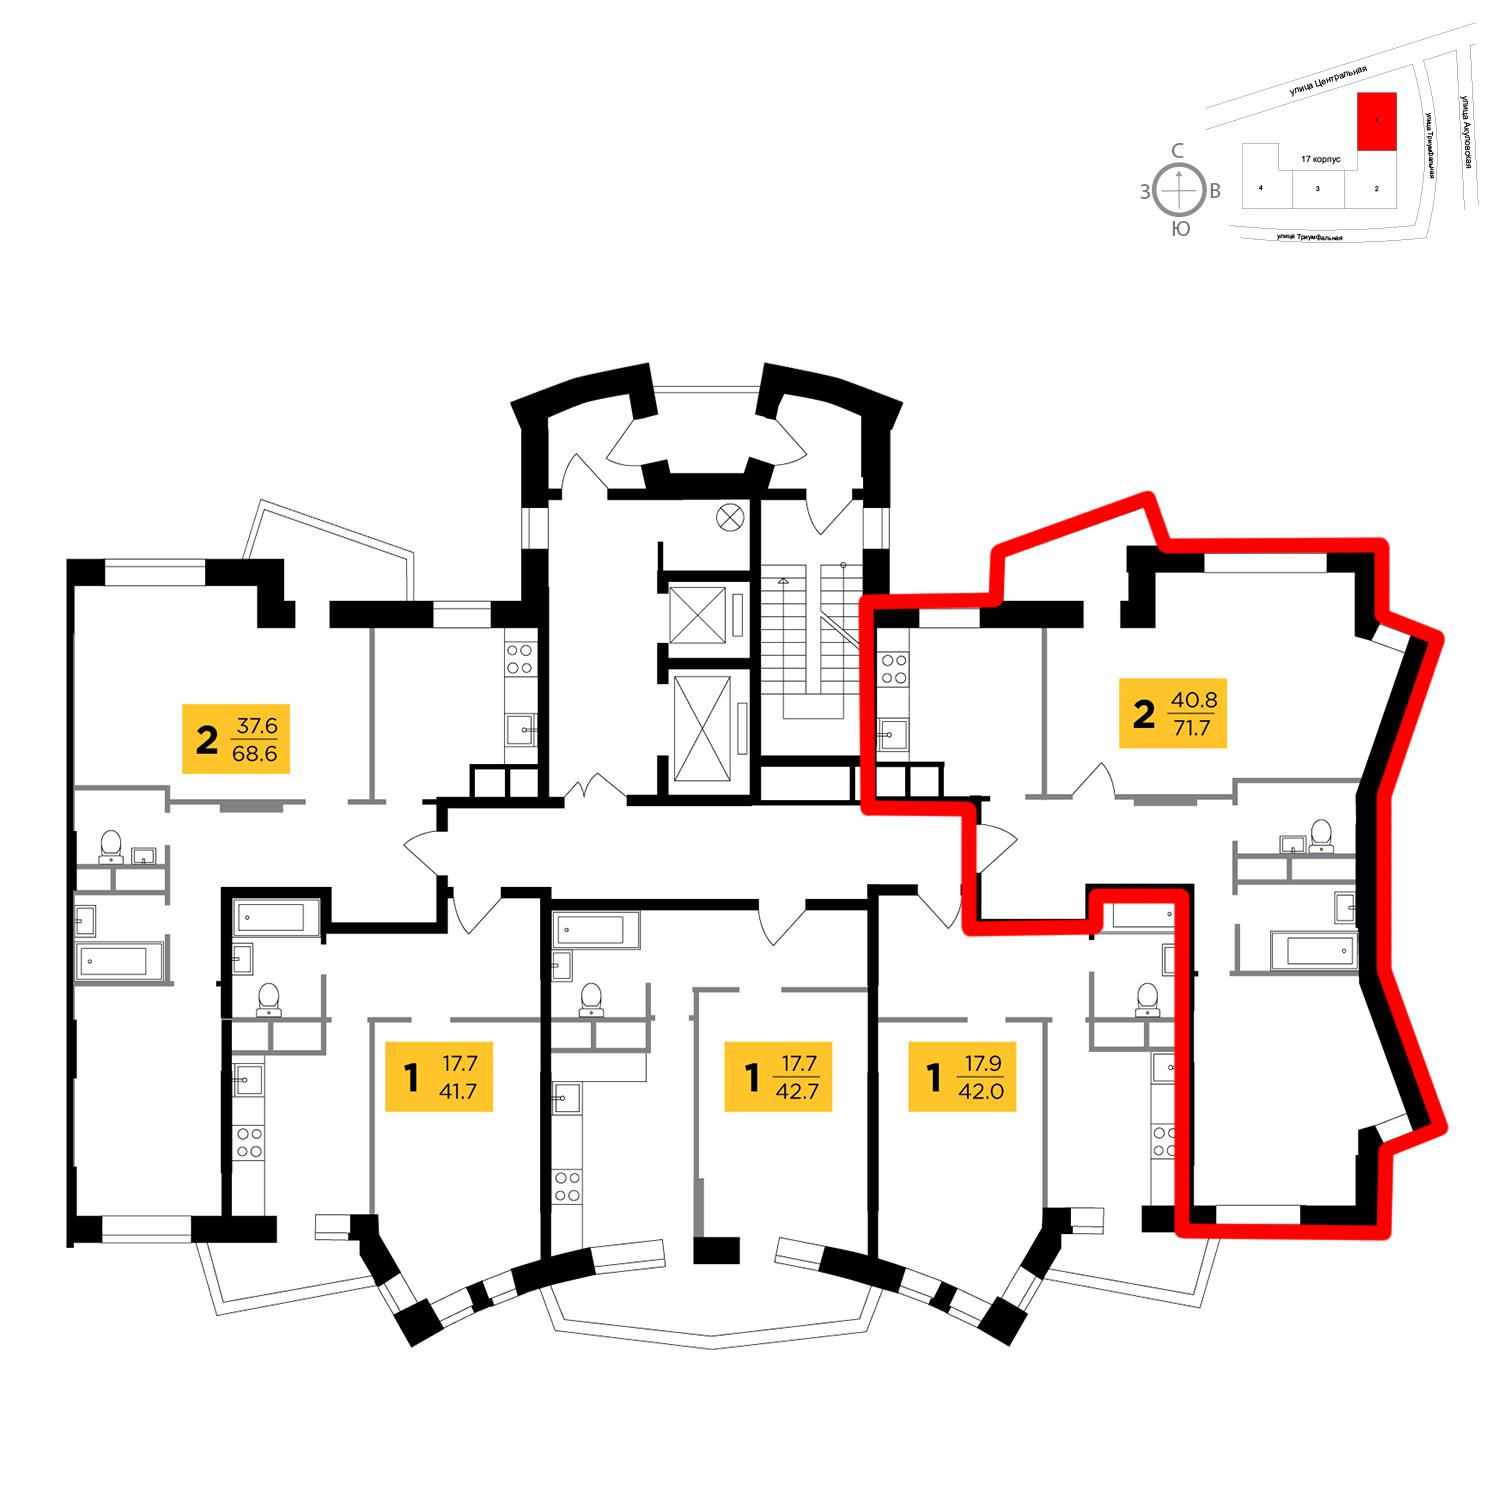 Продаётся 2-комнатная квартира в новостройке 71.7 кв.м. этаж 5/8 за 5 933 318 руб 